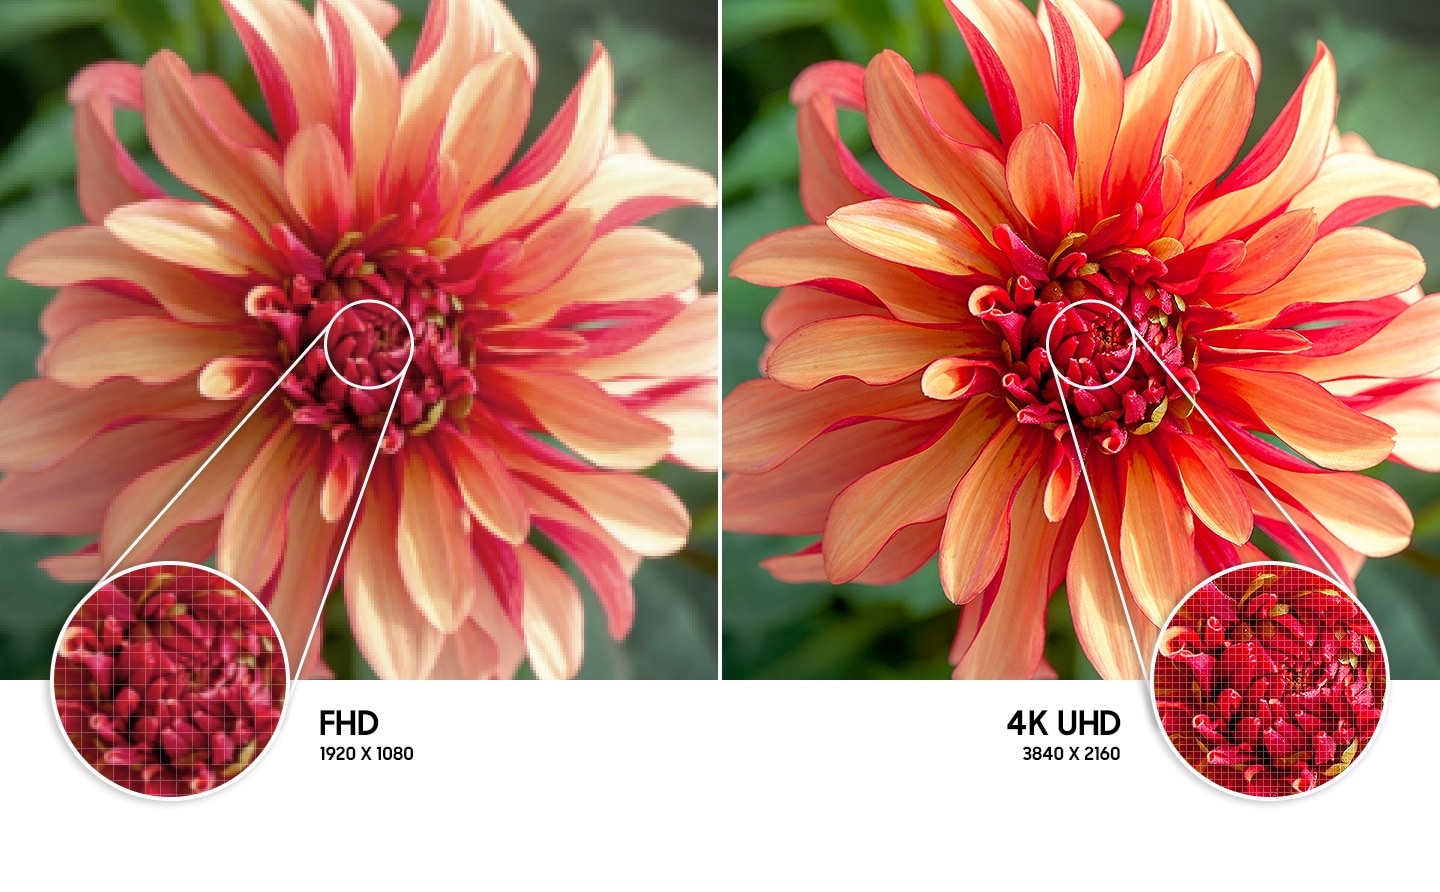 Samsung AU7102 4K Crystal UHD to doskonała rozdzielczość obrazu i czterokrotnie więcej pikseli niż FHD. Sprawdź!